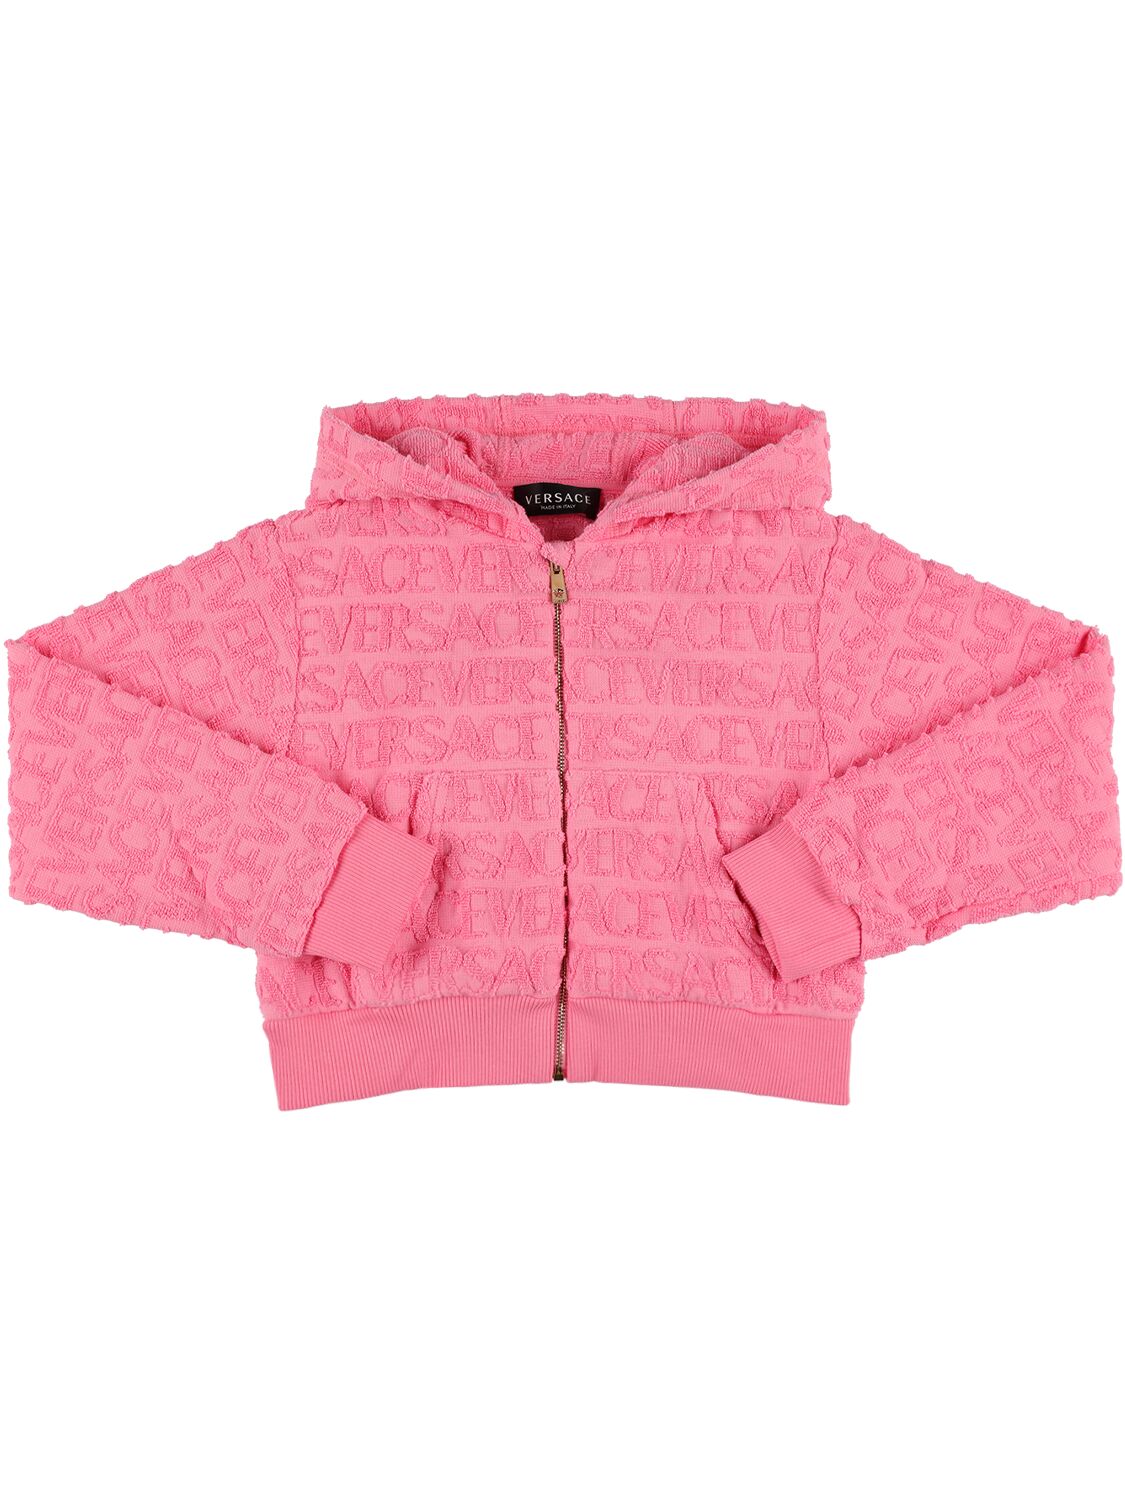 Versace Kids' Cotton Zip-up Sweatshirt Hoodie In Pink